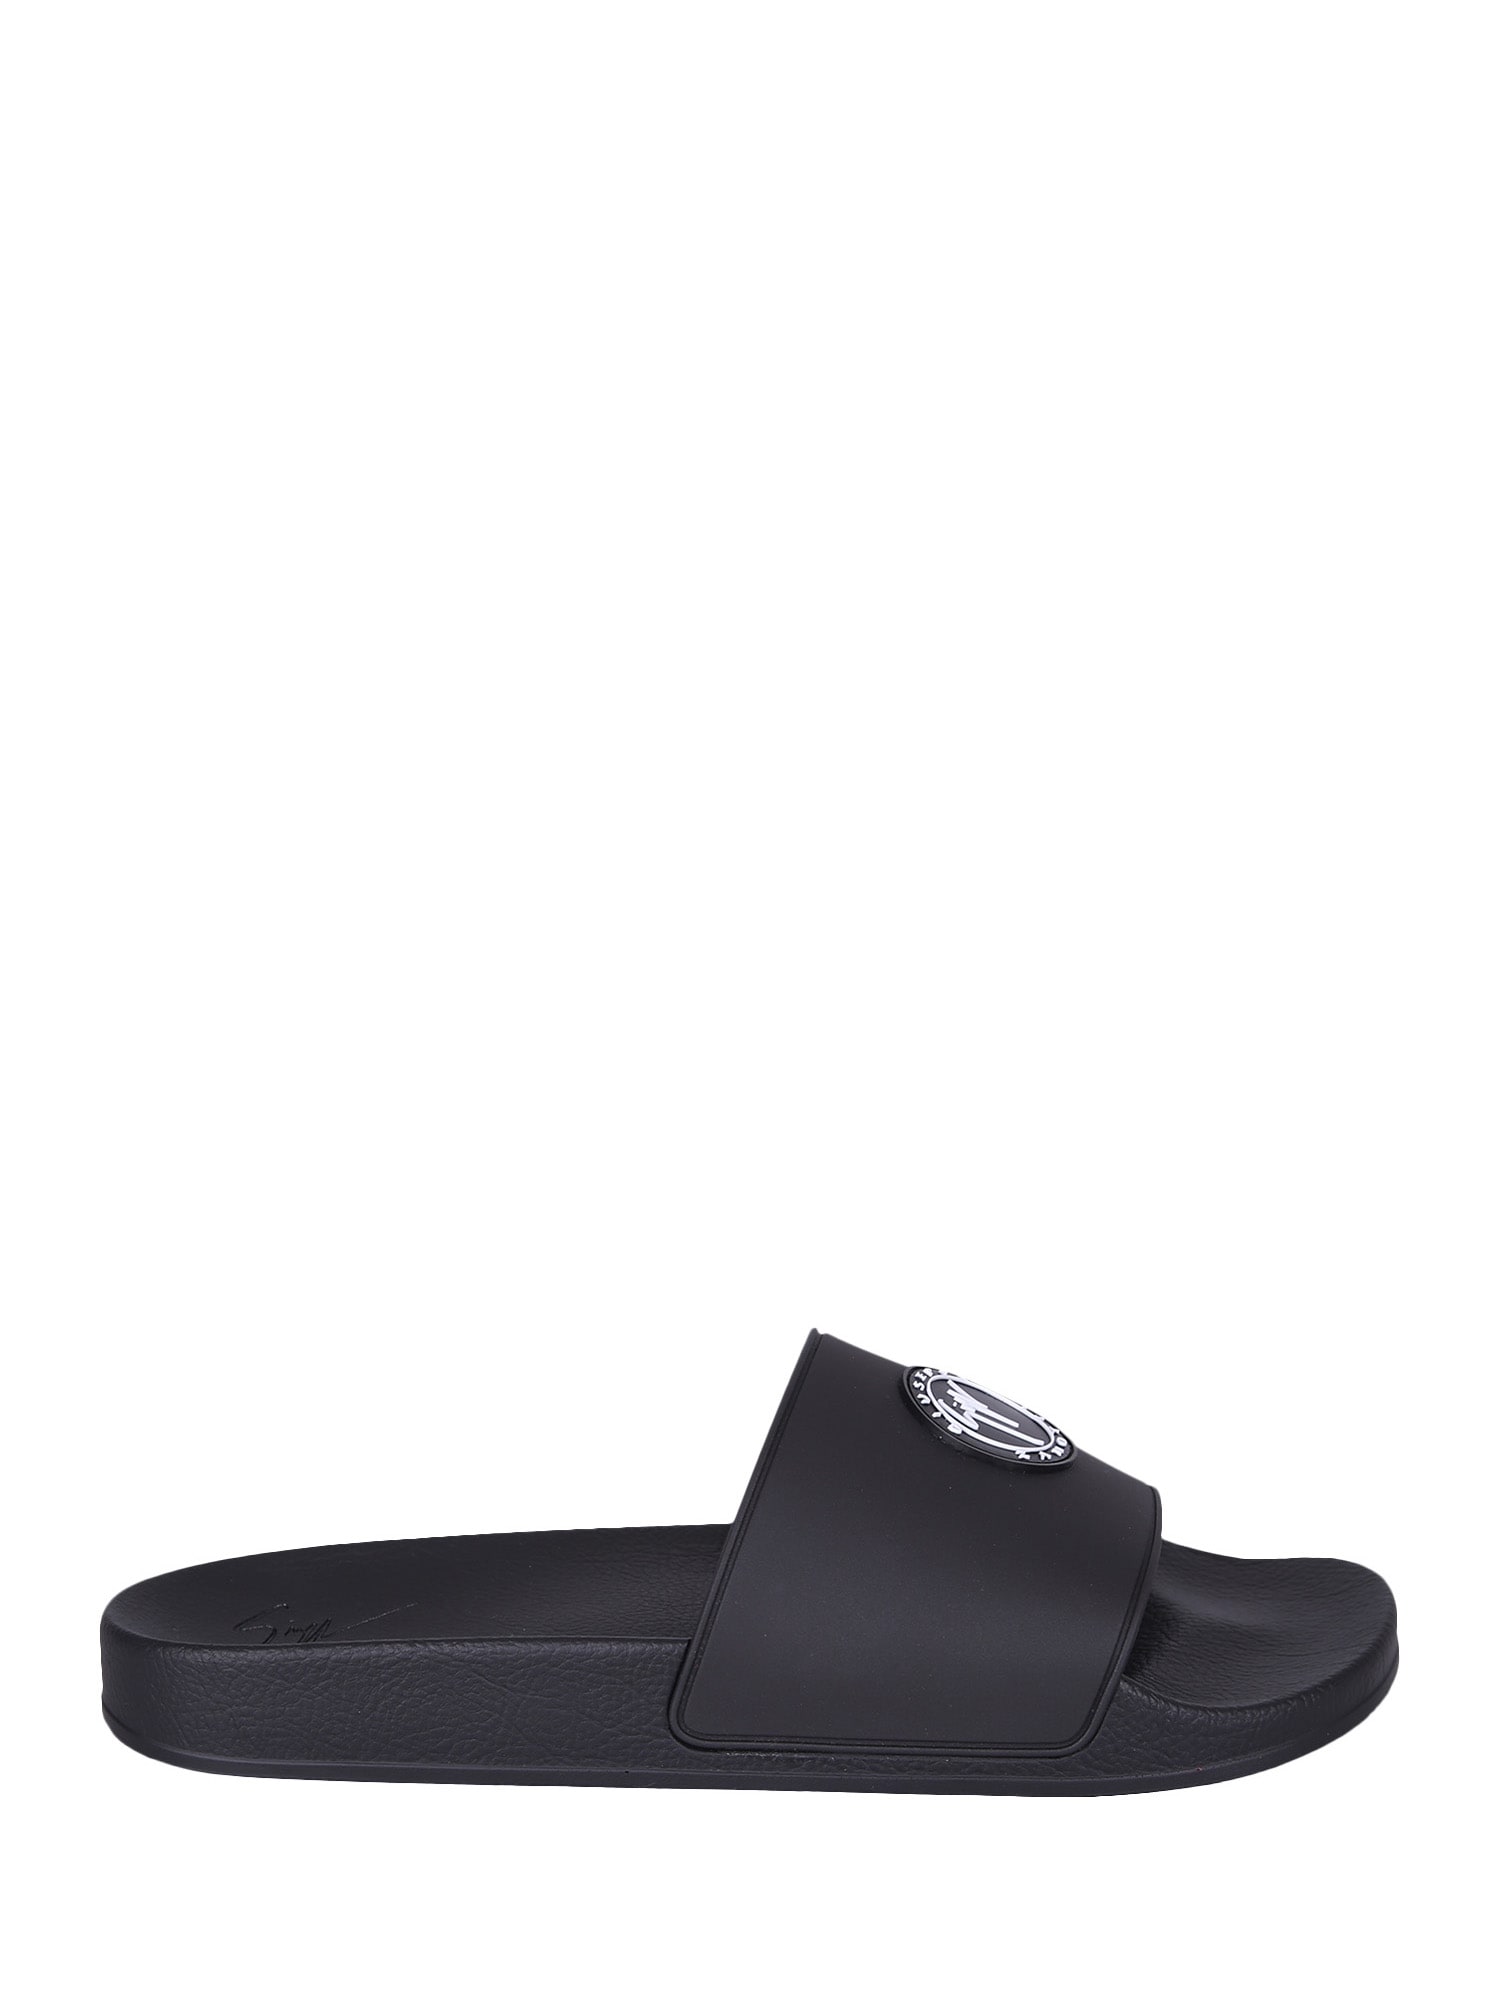 Giuseppe Zanotti Branded Slide Sandals